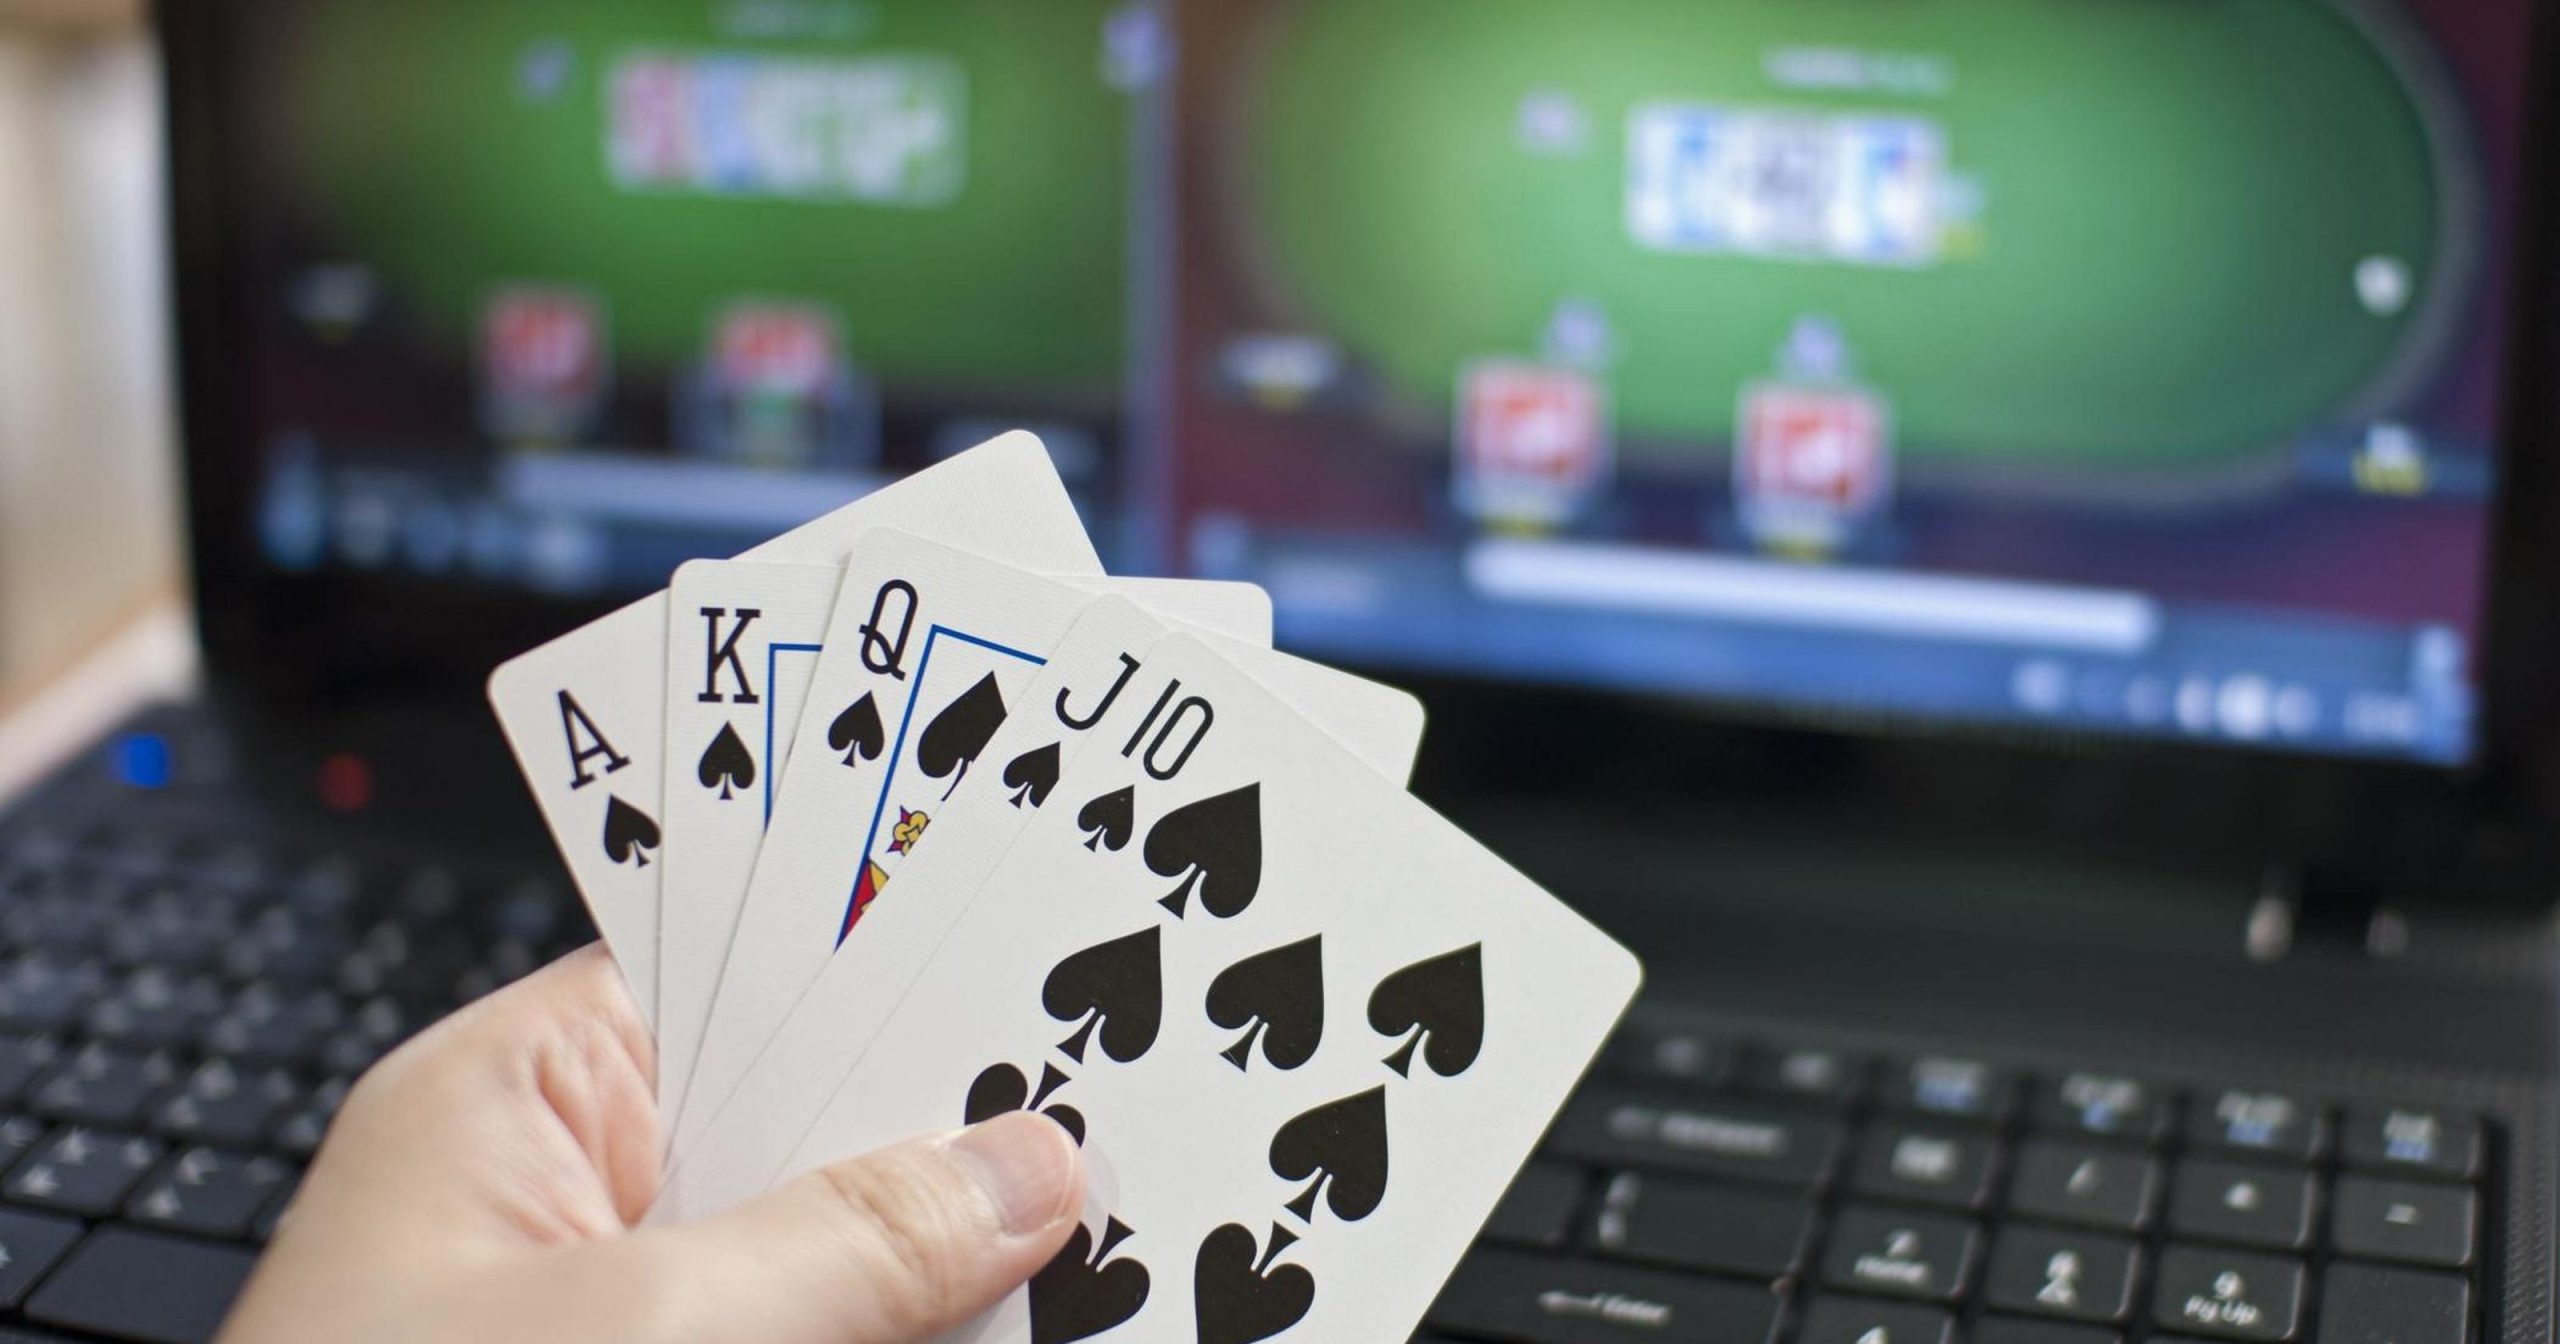 Giocare d’azzardo: miti e realtà a confronto